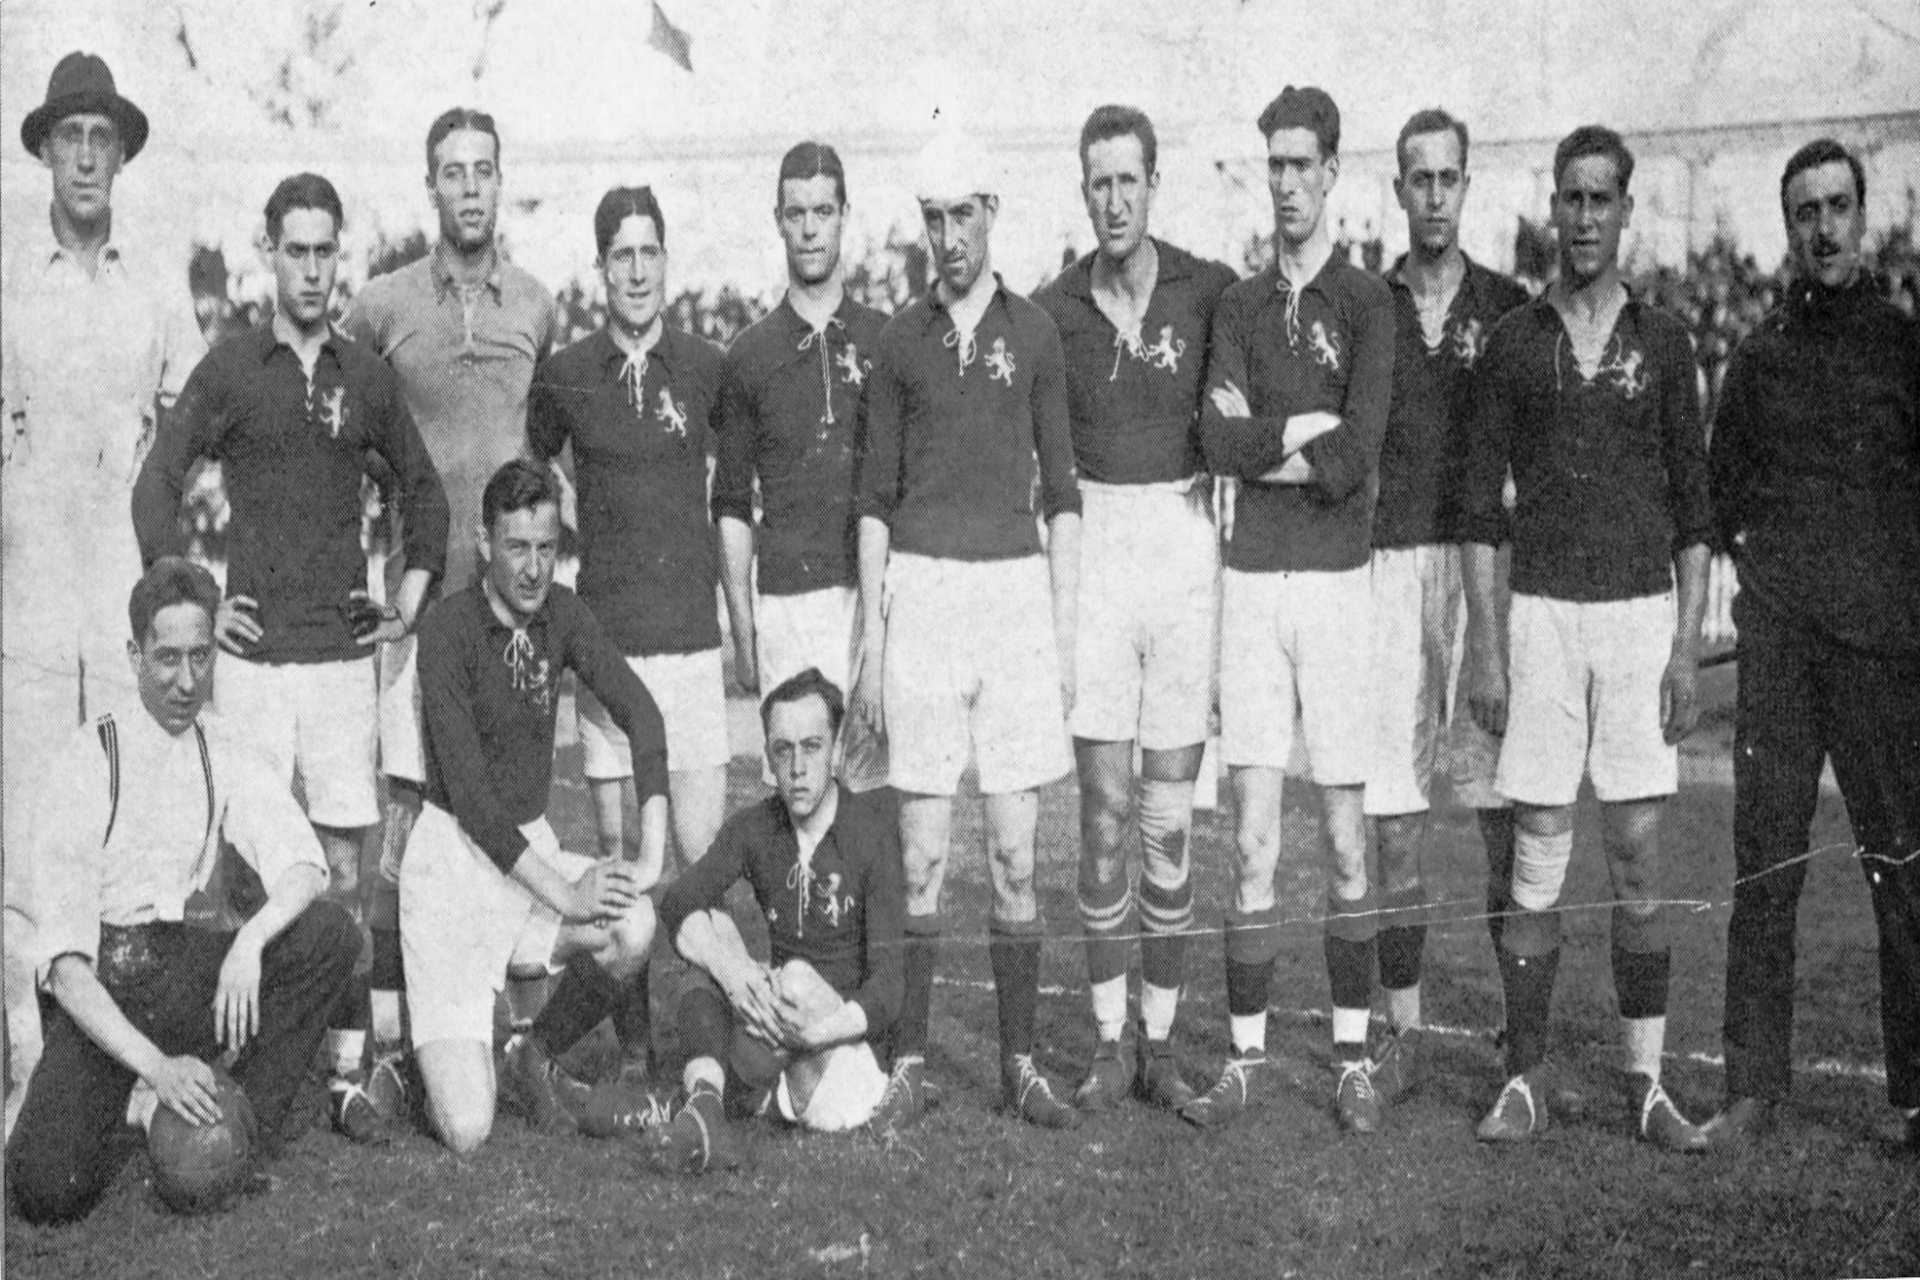 Selección española de las Olimpiadas de Amberes de 1920, Pichichi en el centro con un pañuelo blanco. (Foto: desconocido|wikimedia)